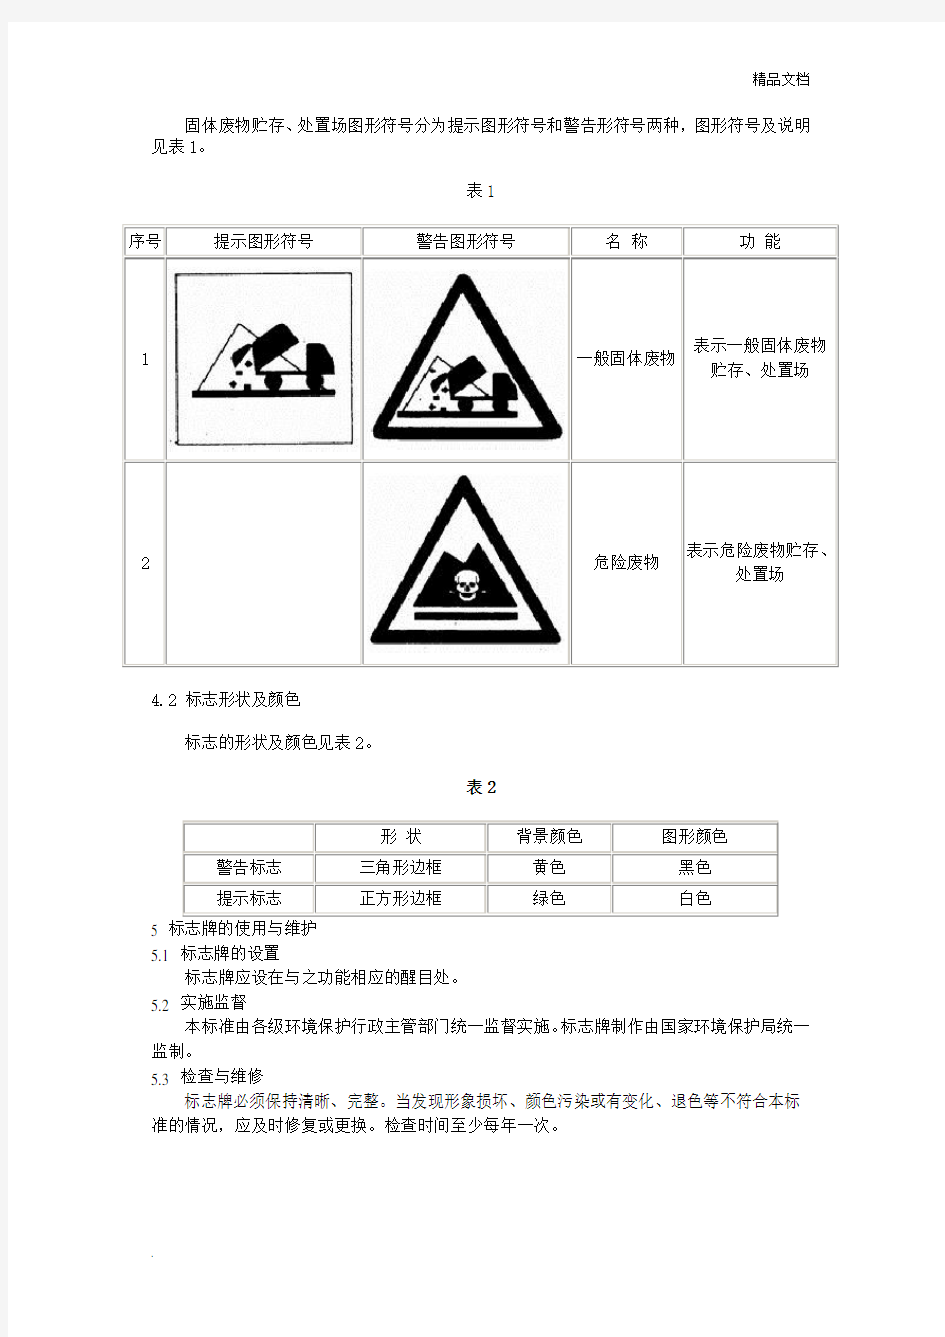 一般工业固体废物贮存场所警示标志